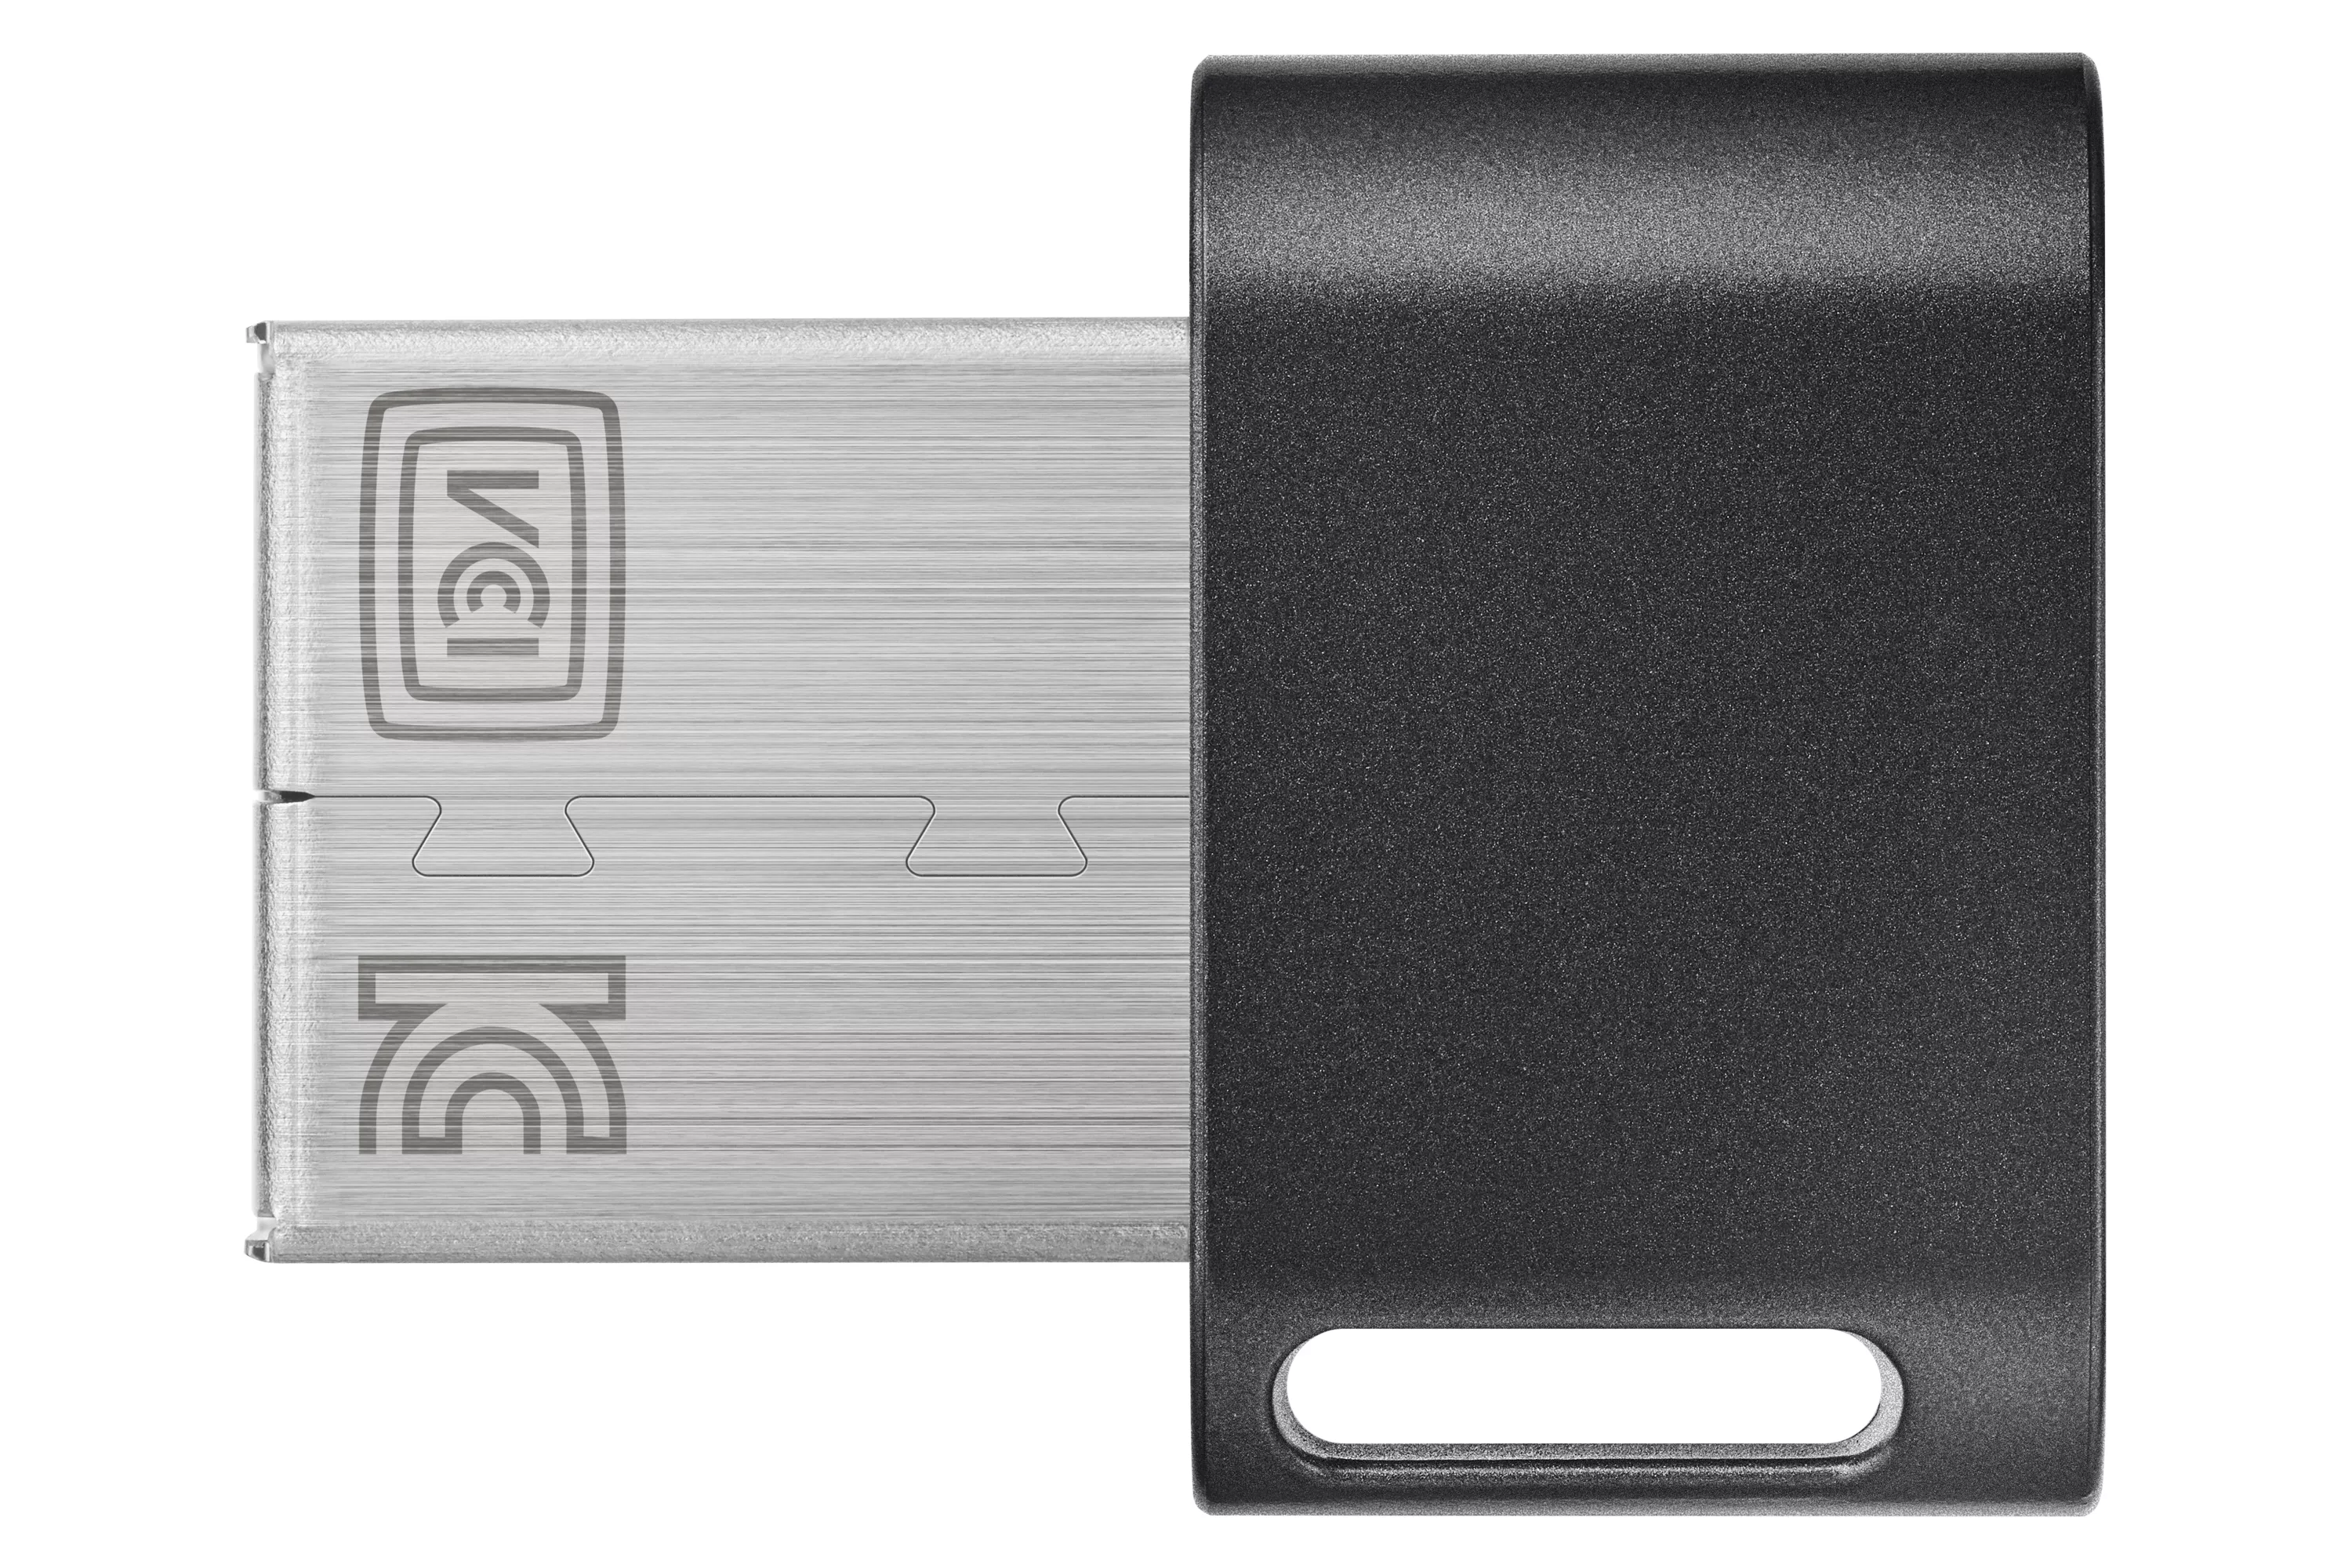 Vente SAMSUNG FIT PLUS 128Go USB 3.1 Samsung au meilleur prix - visuel 2